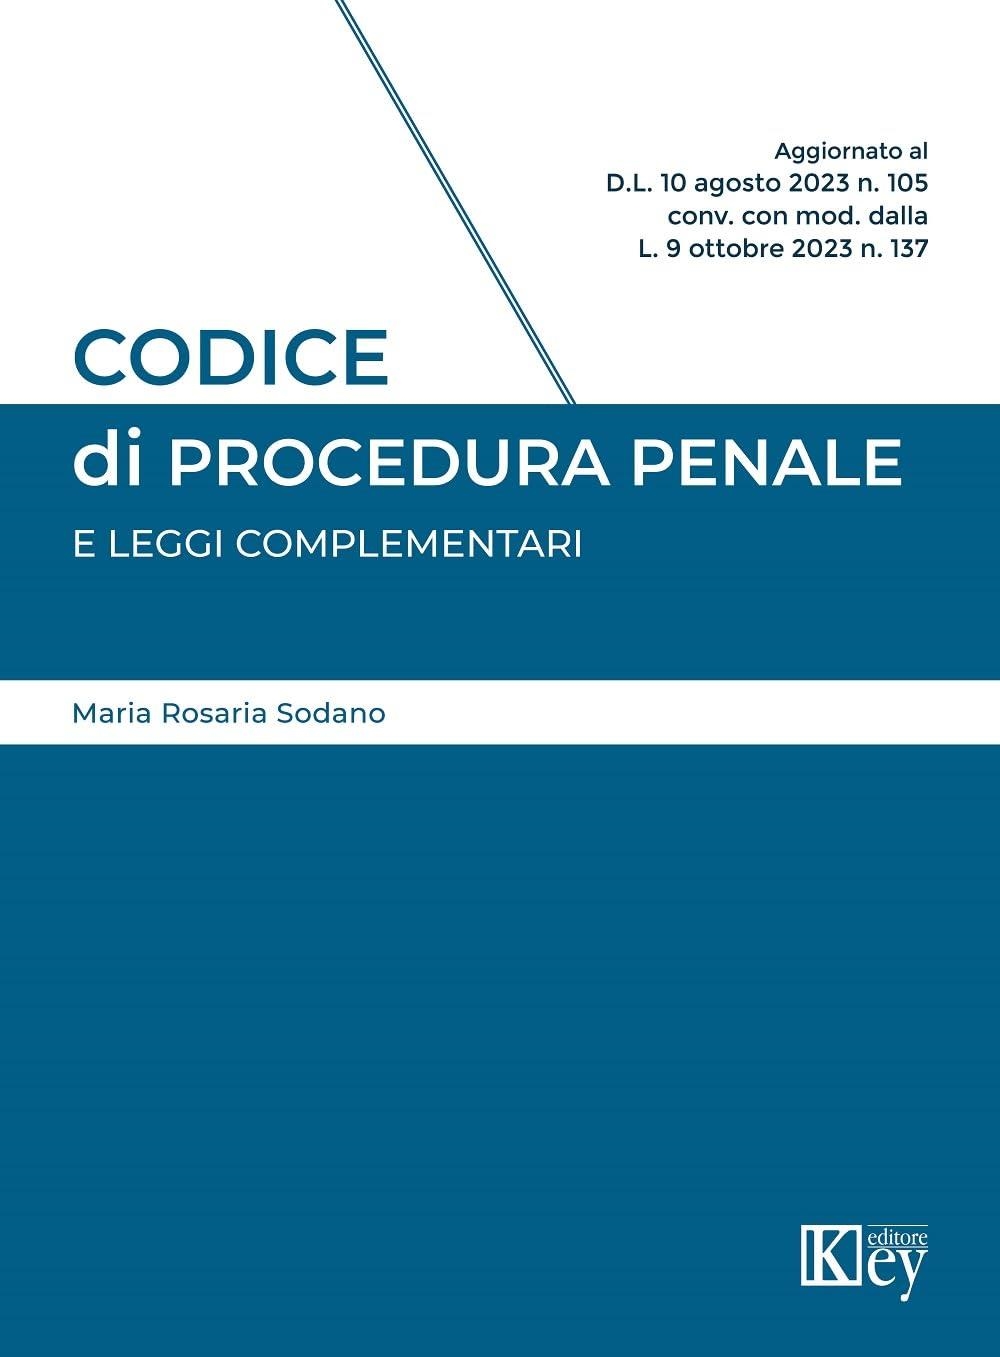 Libri Sodano Maria Rosaria - Codice Di Procedura Penale E Leggi Complementari NUOVO SIGILLATO, EDIZIONE DEL 25/10/2023 SUBITO DISPONIBILE